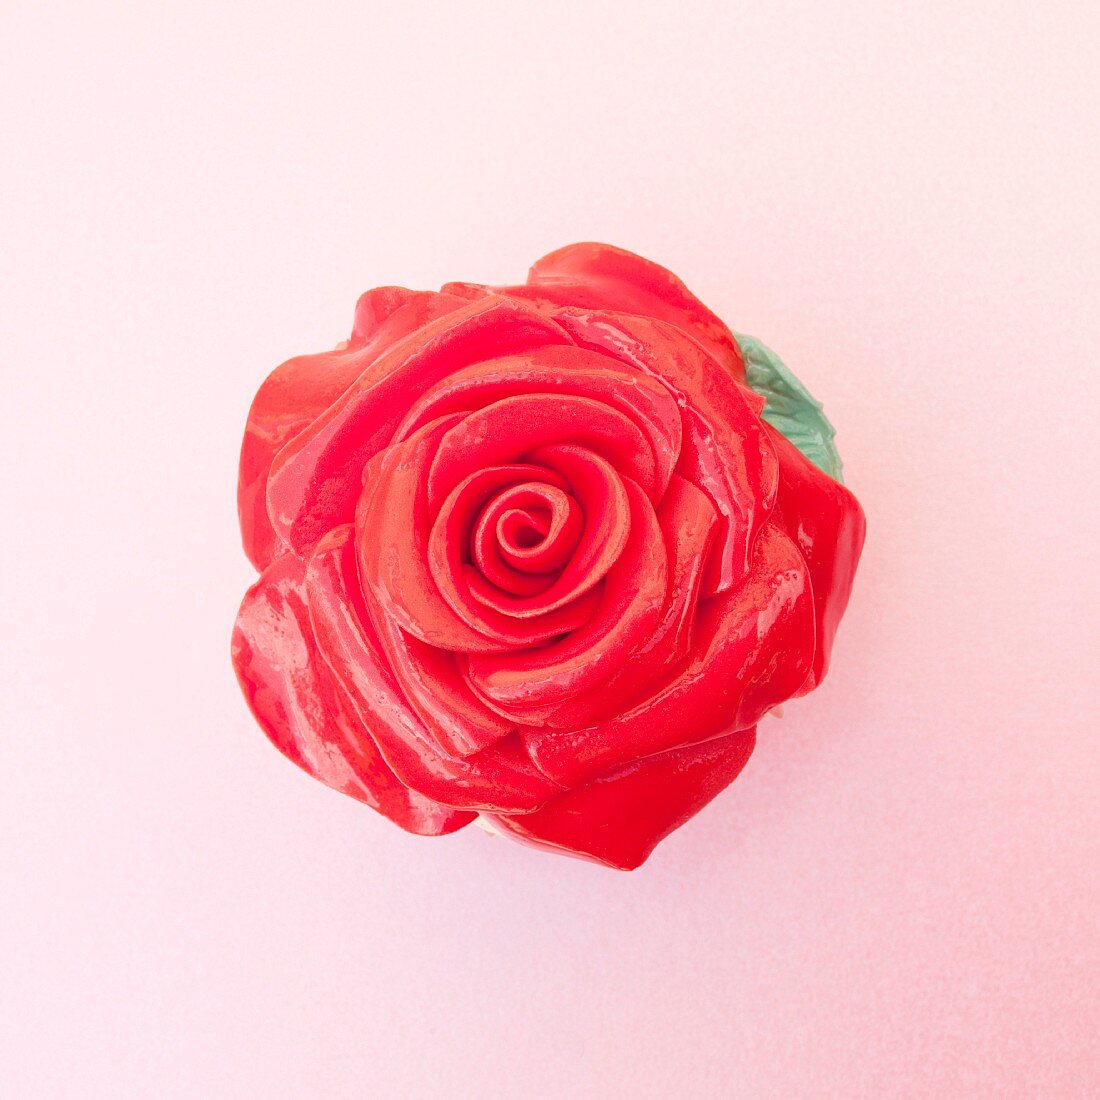 Colored sugar rose